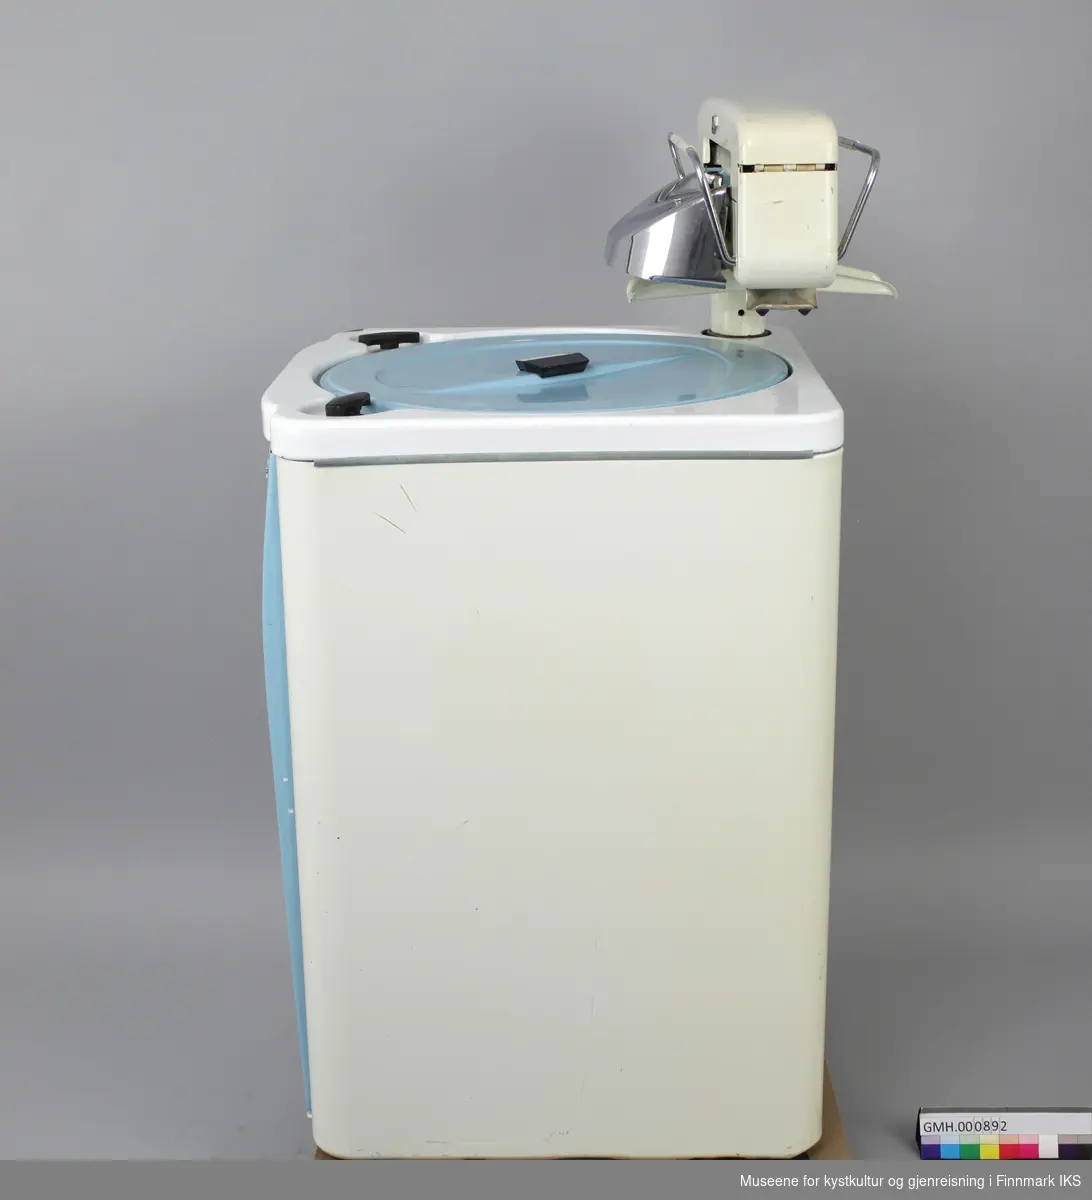 Denne vaskemaskinen er av emaljert metall, har avrundede kanter og en frontdør og lokk i blå lakkert metall. Maskinen har en bryter og en driftslys foran. 
Maskinen har en tilhørende elektrisk vrider (GMH.00891) som er festet på toppen. Vaskemaskinen er en såkalt "Agitatormaskin". Det betyr at den har en skovl i bunnen som beveger seg frem og tilbake i vaskeprosessen. Maskinen har et varmeelement og en elektrisk vannpumpe, samt fire hjul under. Hjulene er ikke montert. 
Oppå maskinen er en hendel som er merket: PUMPE PÅ-AV og hendel merket: TREKK OPP FOR START VASK. Den hvite bryteren foran er merket: I, II og III. På hjulene står det: FLEXELLO/MADE IN ENGLAND. Bak på døra er det skilt med følgende påskrifter: MÅ BARE TILKOBLES JORDINGSKONTAKT / 16 M 195299 MANUFACTURED BY WILKIN & MITCHELL LTD/ DARLASTON.S.SAFF. ENGLAND / Type E Volt 220. 
Med maskinen følger det en bruksanvisning, en vaskeklype (GMH.000894) og en gummislange (GMH.000893). Pakningen er porøs og det er 5 deler avbrudd som følger med separat.